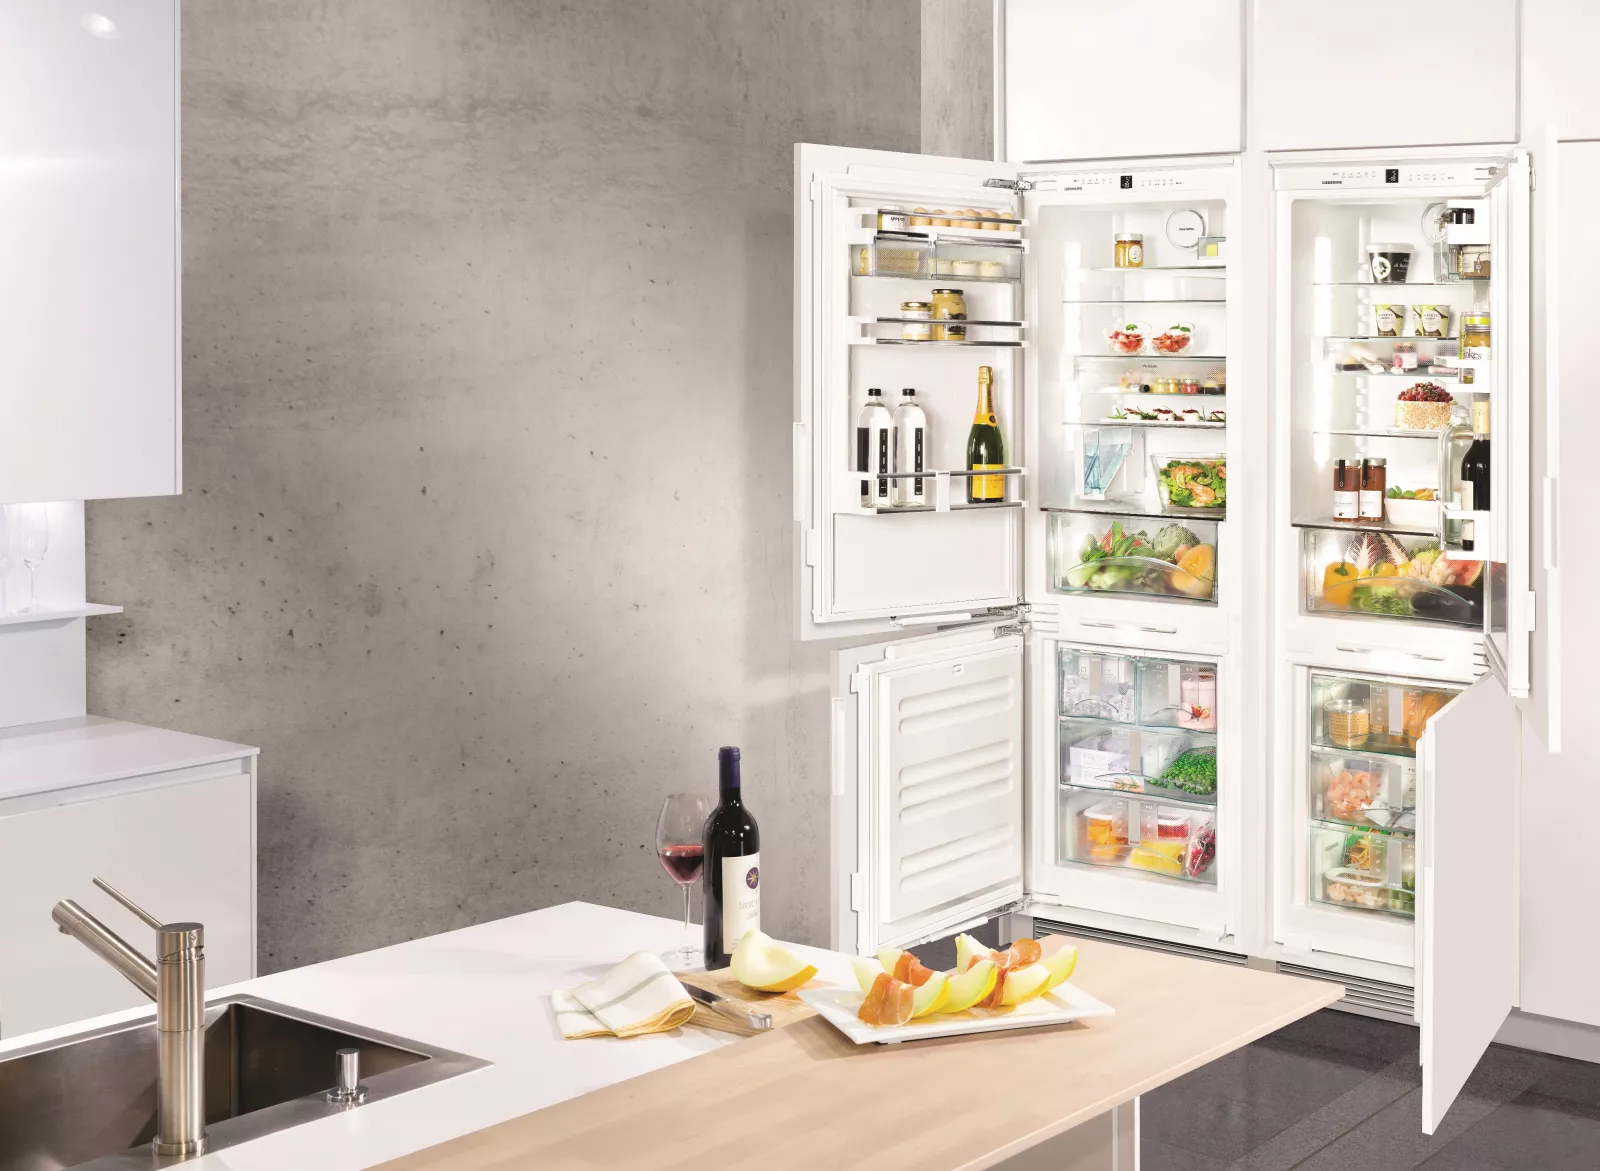 Холодильник встроенный двухкамерный no frost. Liebherr ICN 3386. Холодильник 3386 Либхер встраиваемый. Встроенный холодильник Либхер. Либхер холодильник встраиваемый двухкамерный.